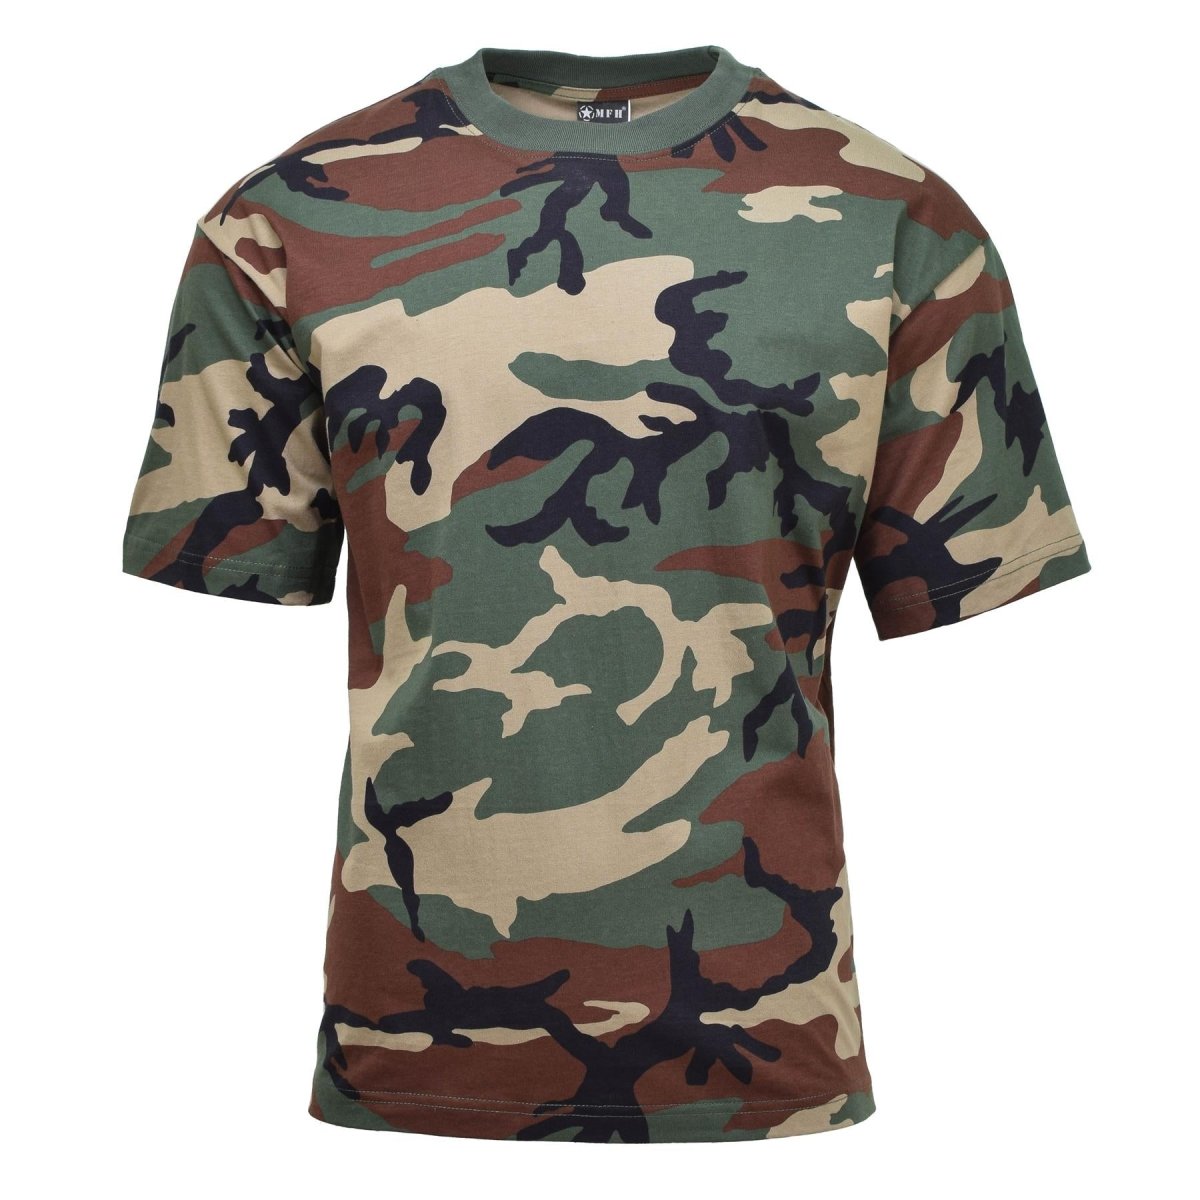 MFH U.S. Military style short sleeve T-Shirt Woodland camouflage under ...